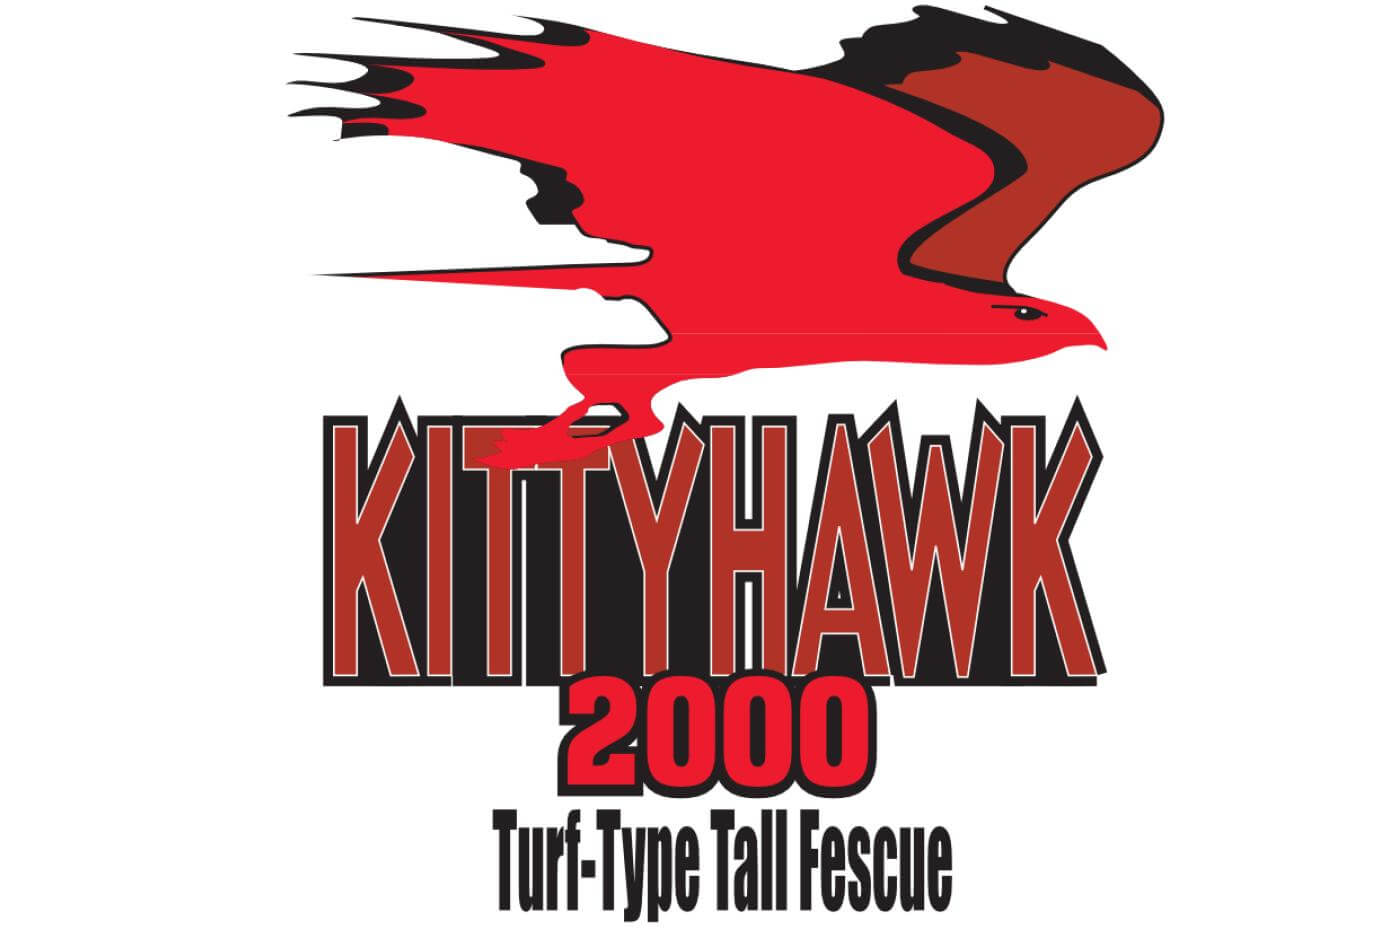 Kitty Hawk 2000 logo